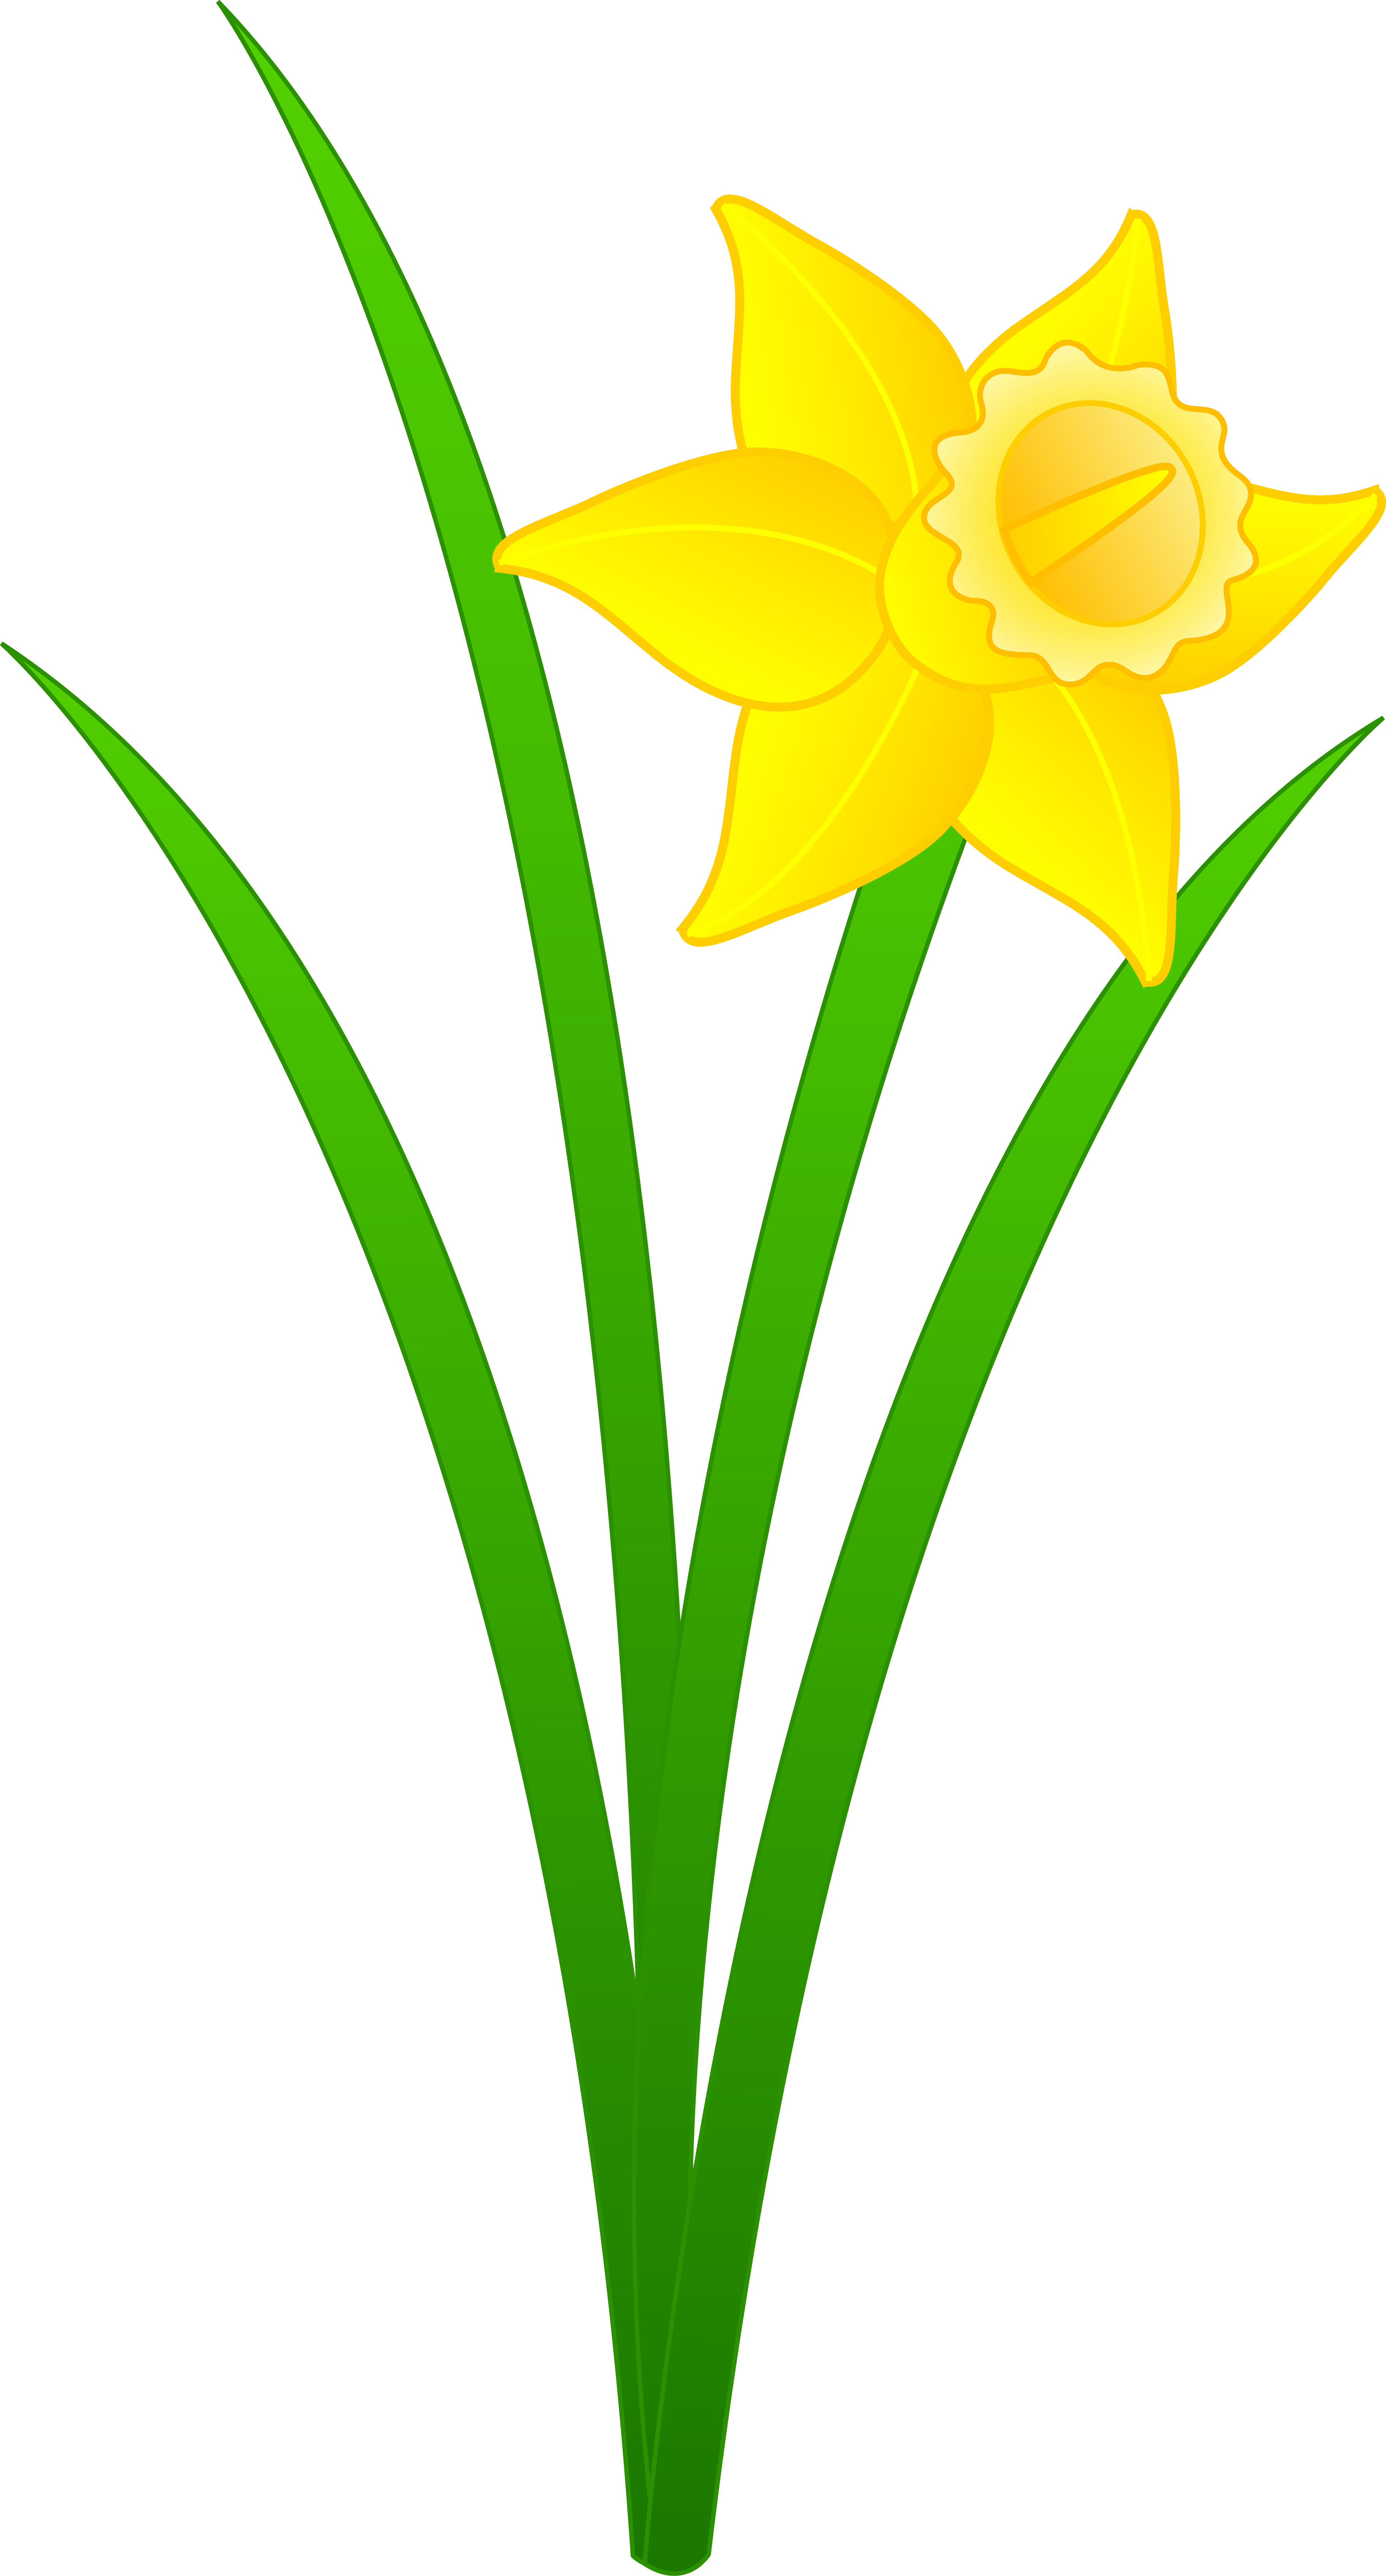 HQ Daffodil Wallpapers | File 1535.81Kb